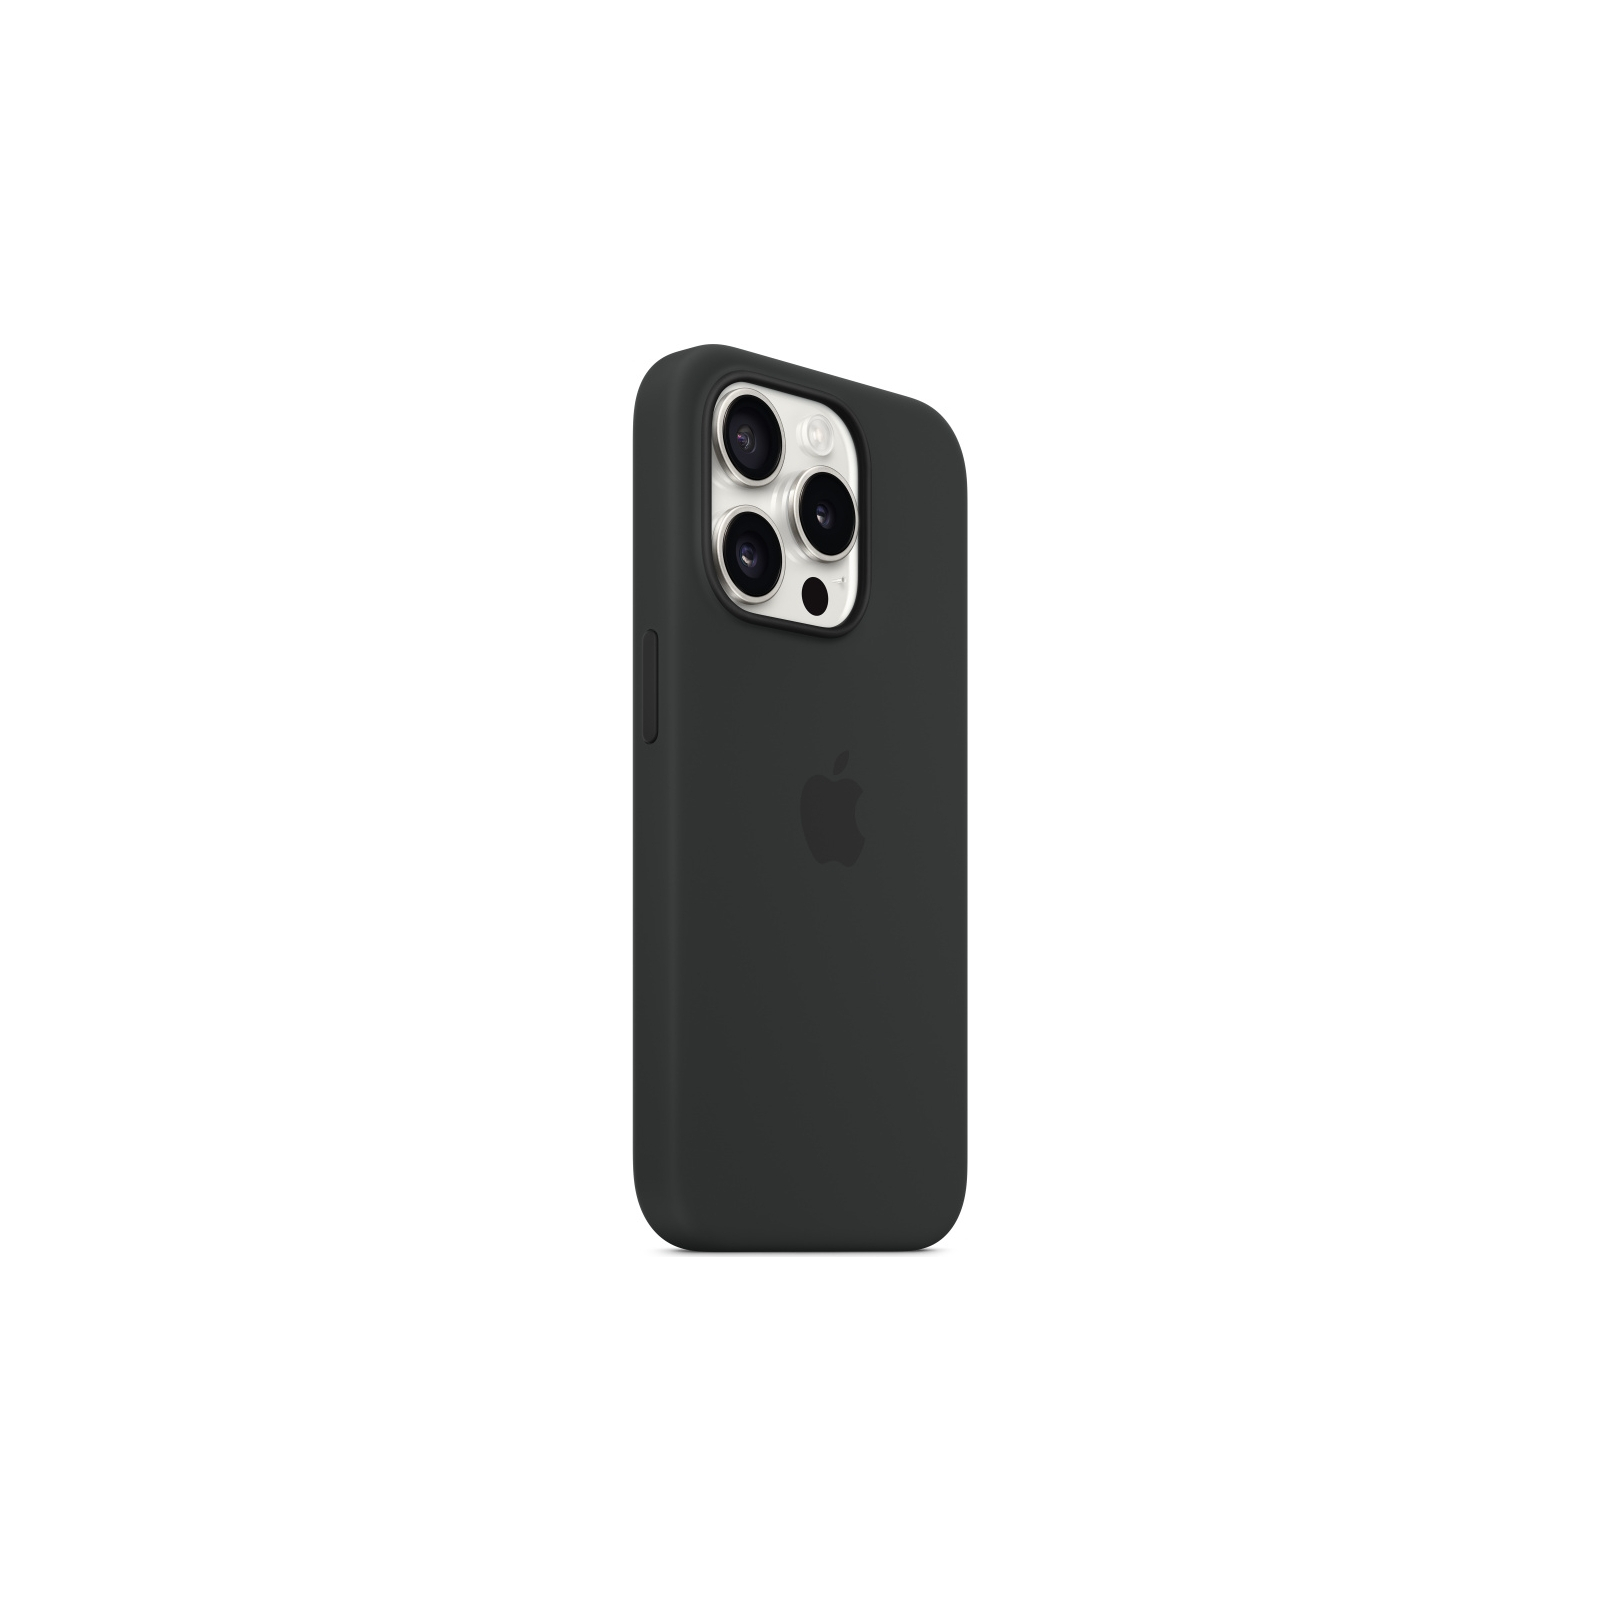 Чехол для мобильного телефона Apple iPhone 15 Pro Silicone Case with MagSafe Storm Blue (MT1D3ZM/A) изображение 5